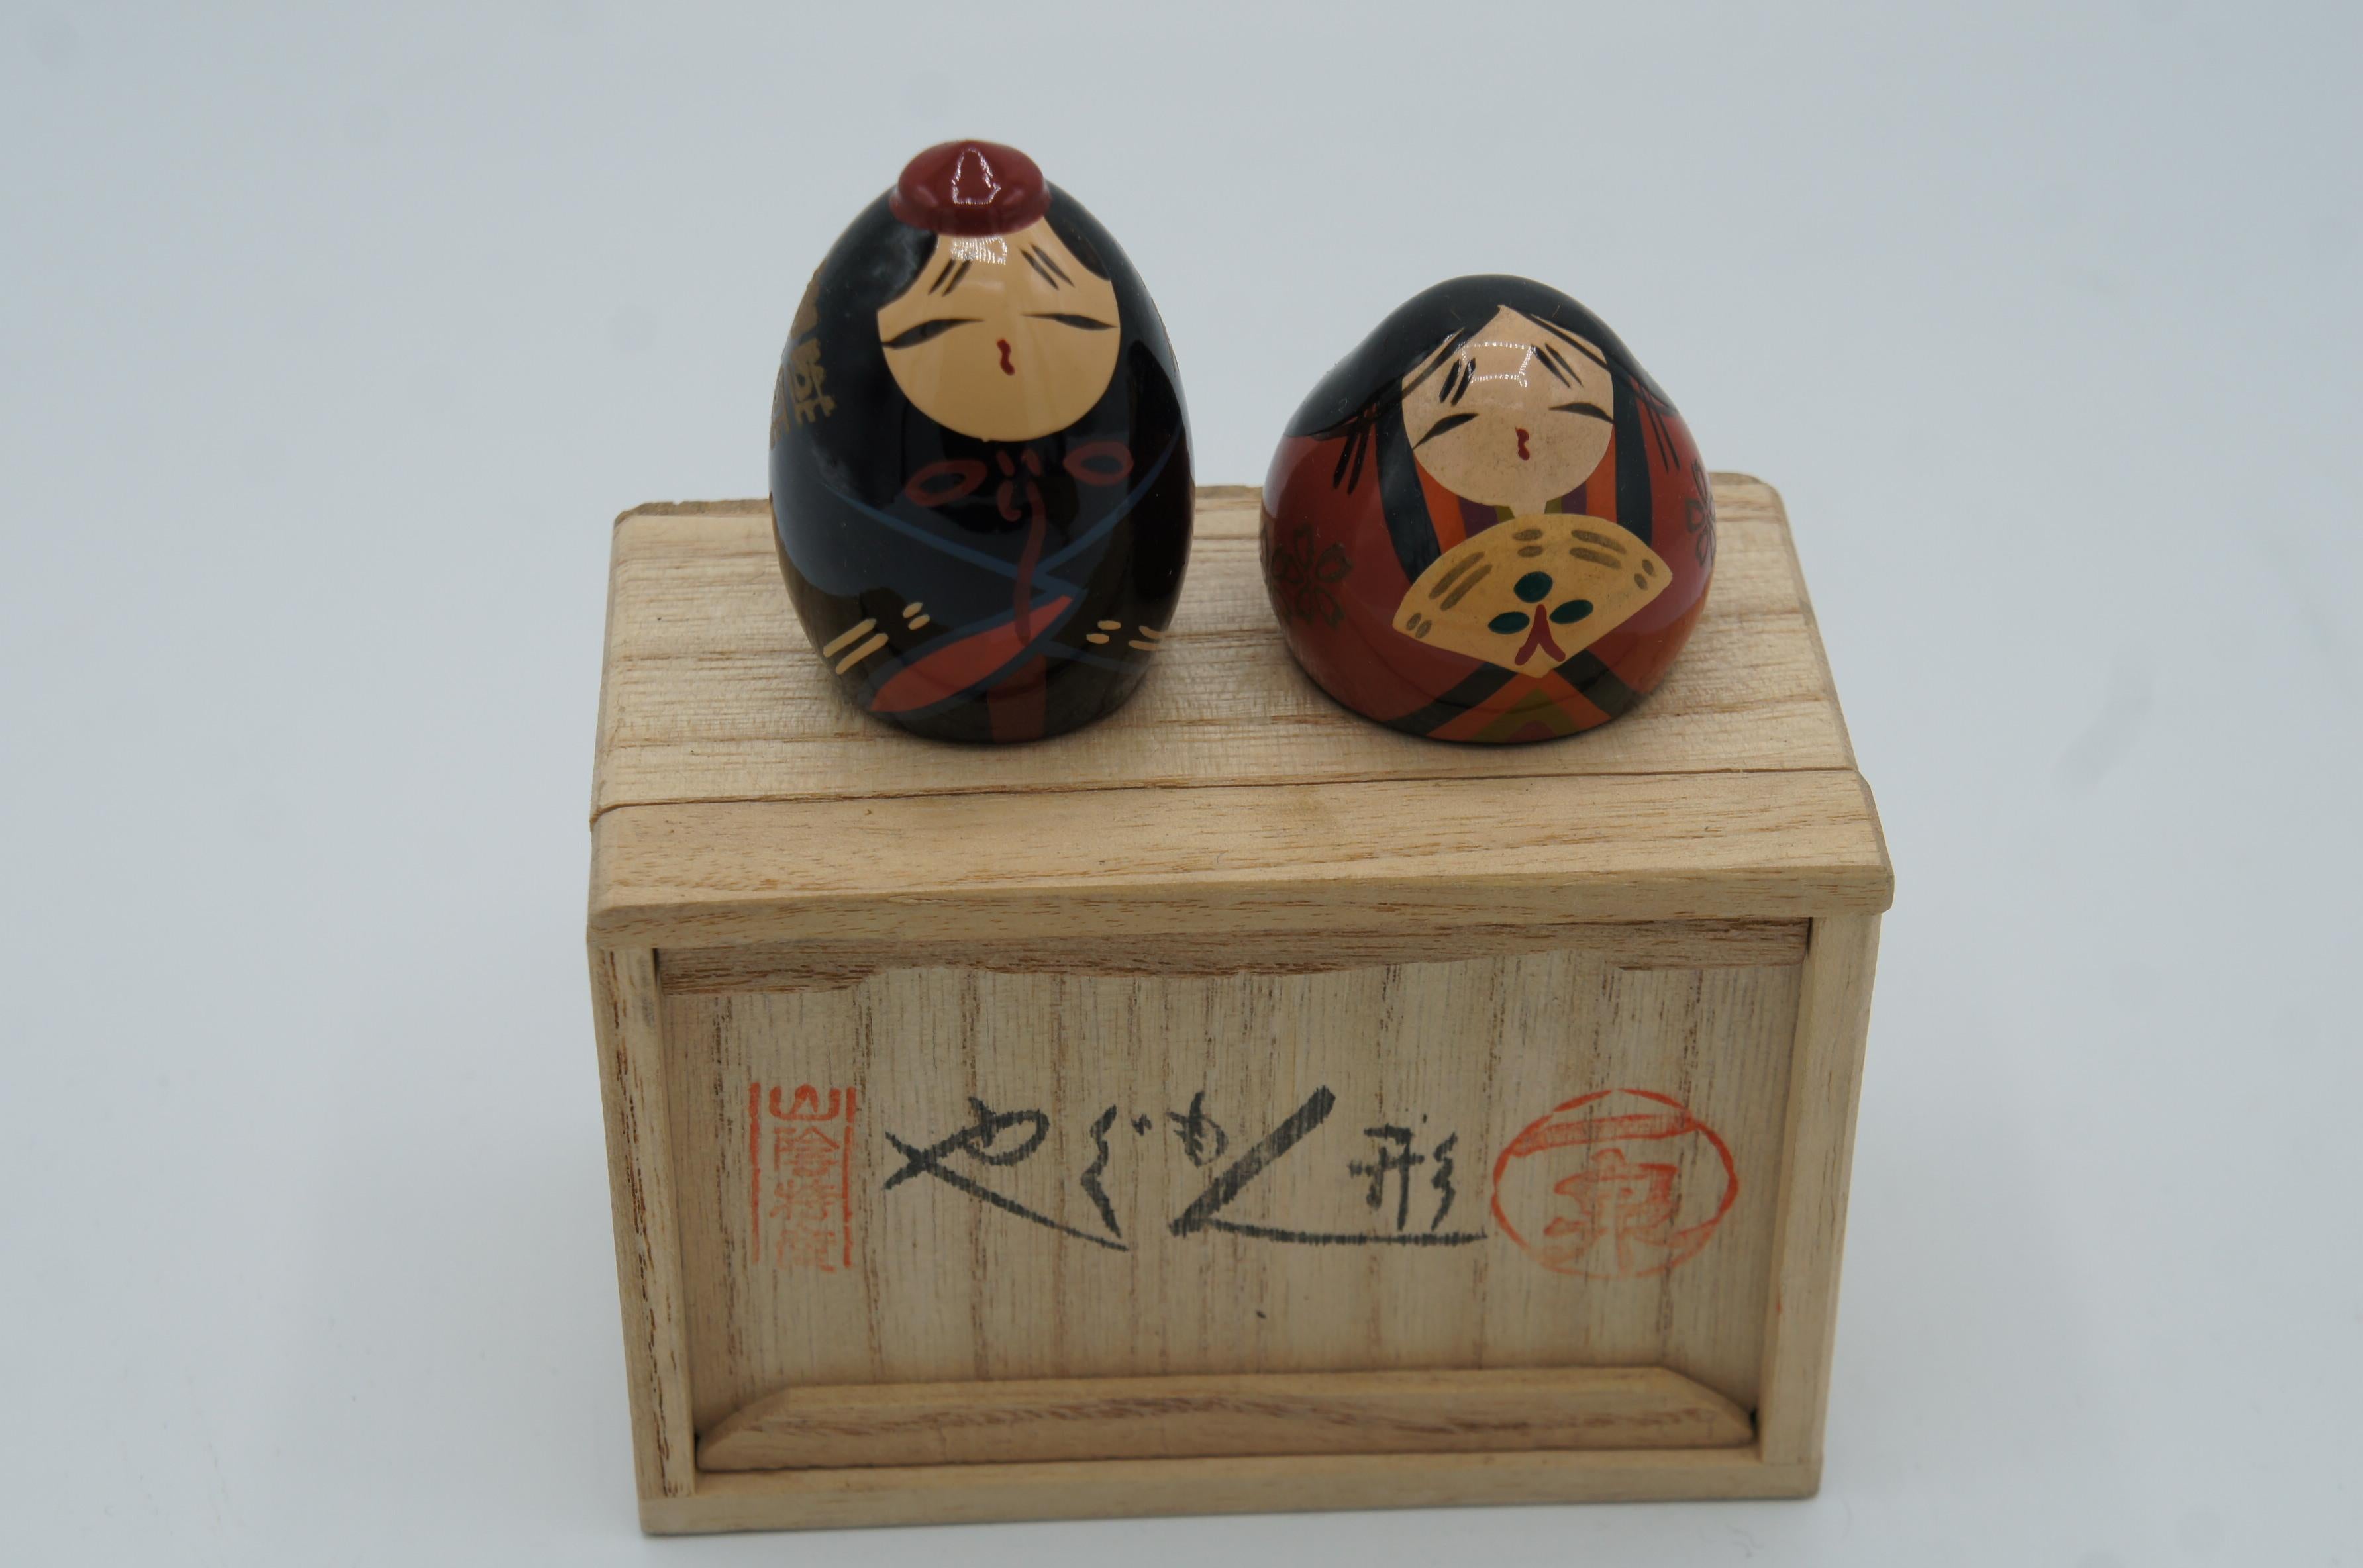 -Details-
Epoche: Showa (um 1970)
Verkauft mit Box und die 2 Stücke

Ursprünglich als Spielzeug für kleine Mädchen gedacht, wurden sie später als Souvenirs verkauft und symbolisieren heute Fruchtbarkeit und den Wunsch nach einem gesunden Kind.
